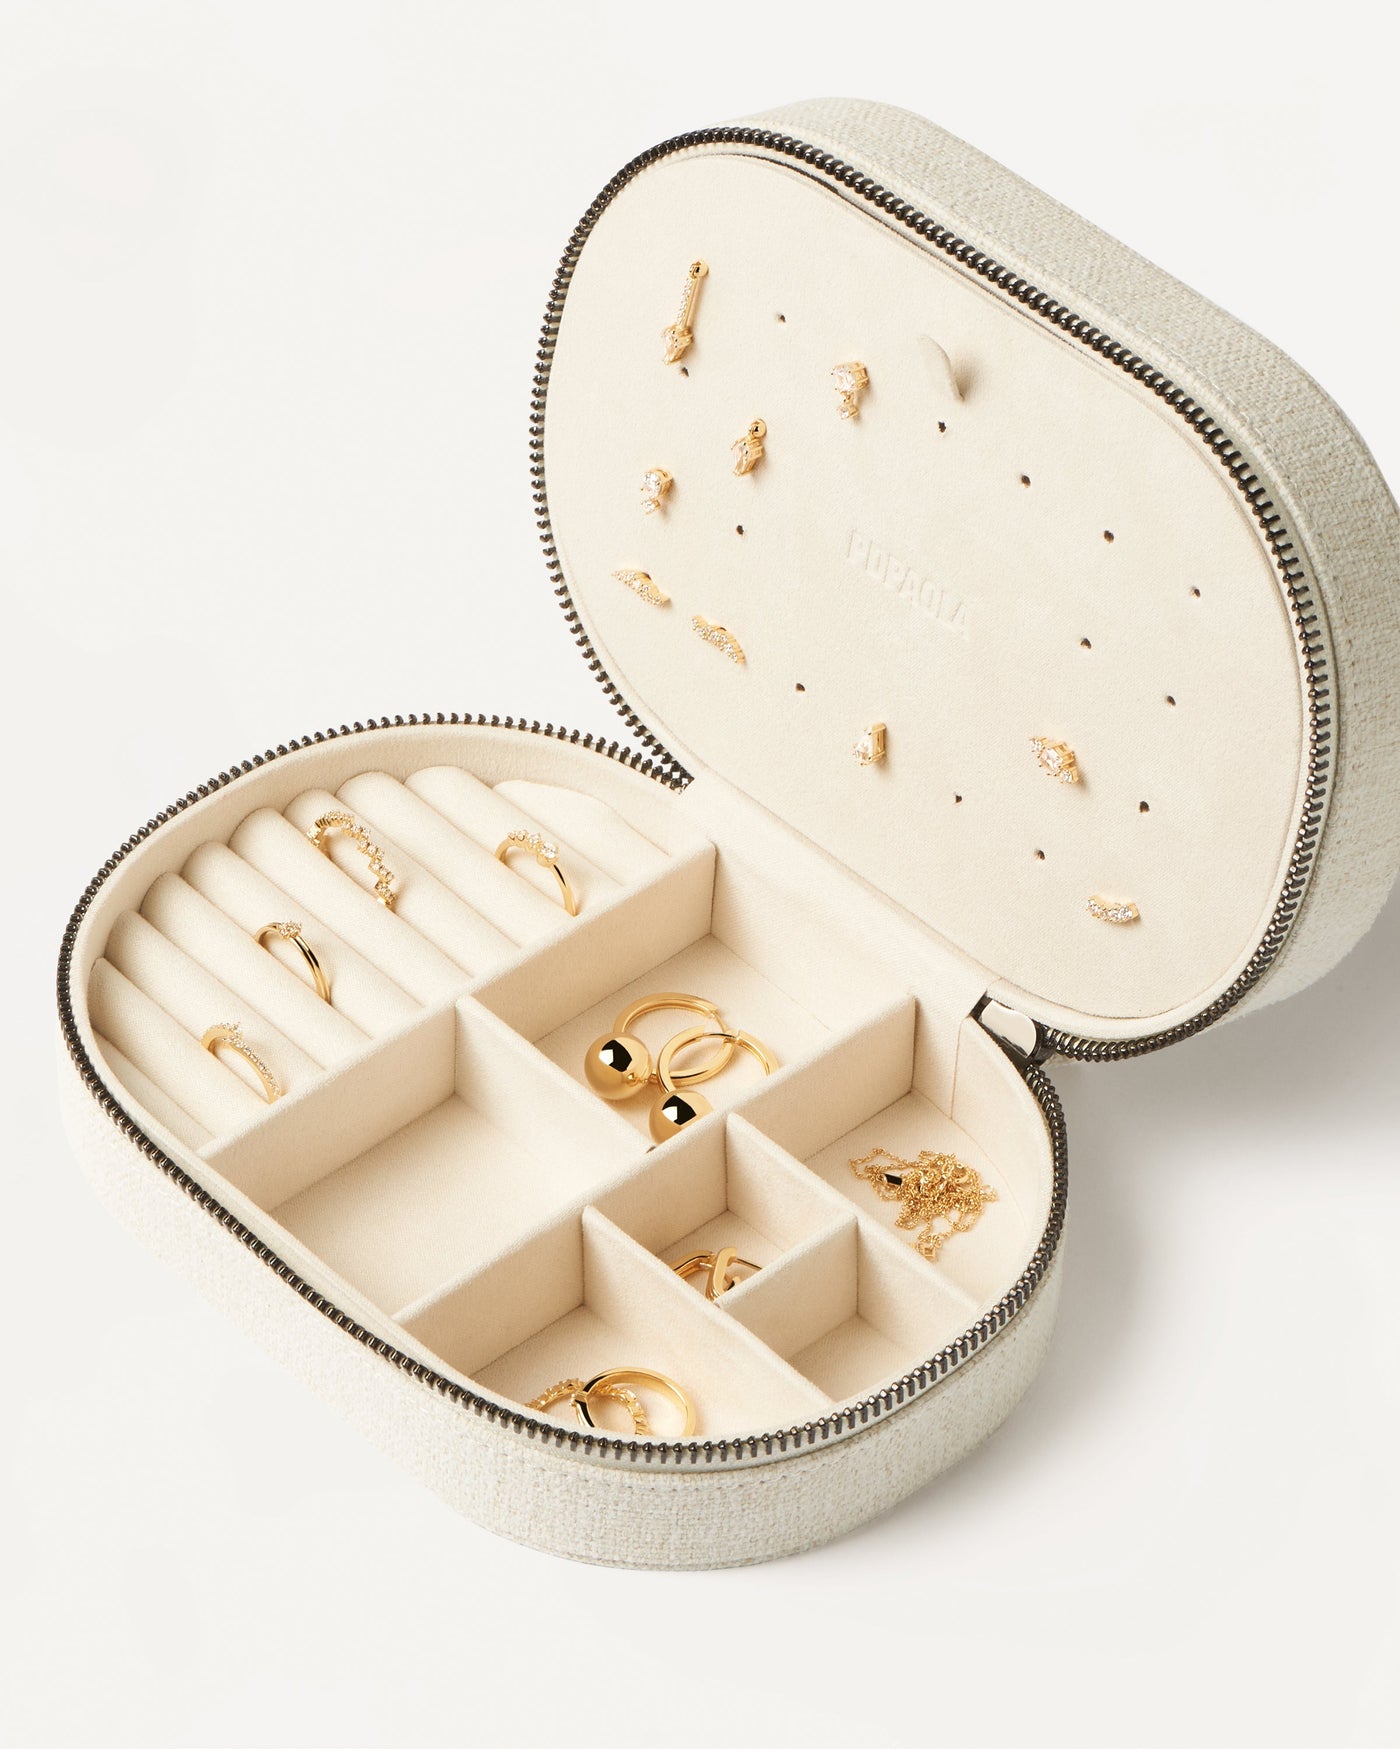 Supreme Jewelry Box - 
  
